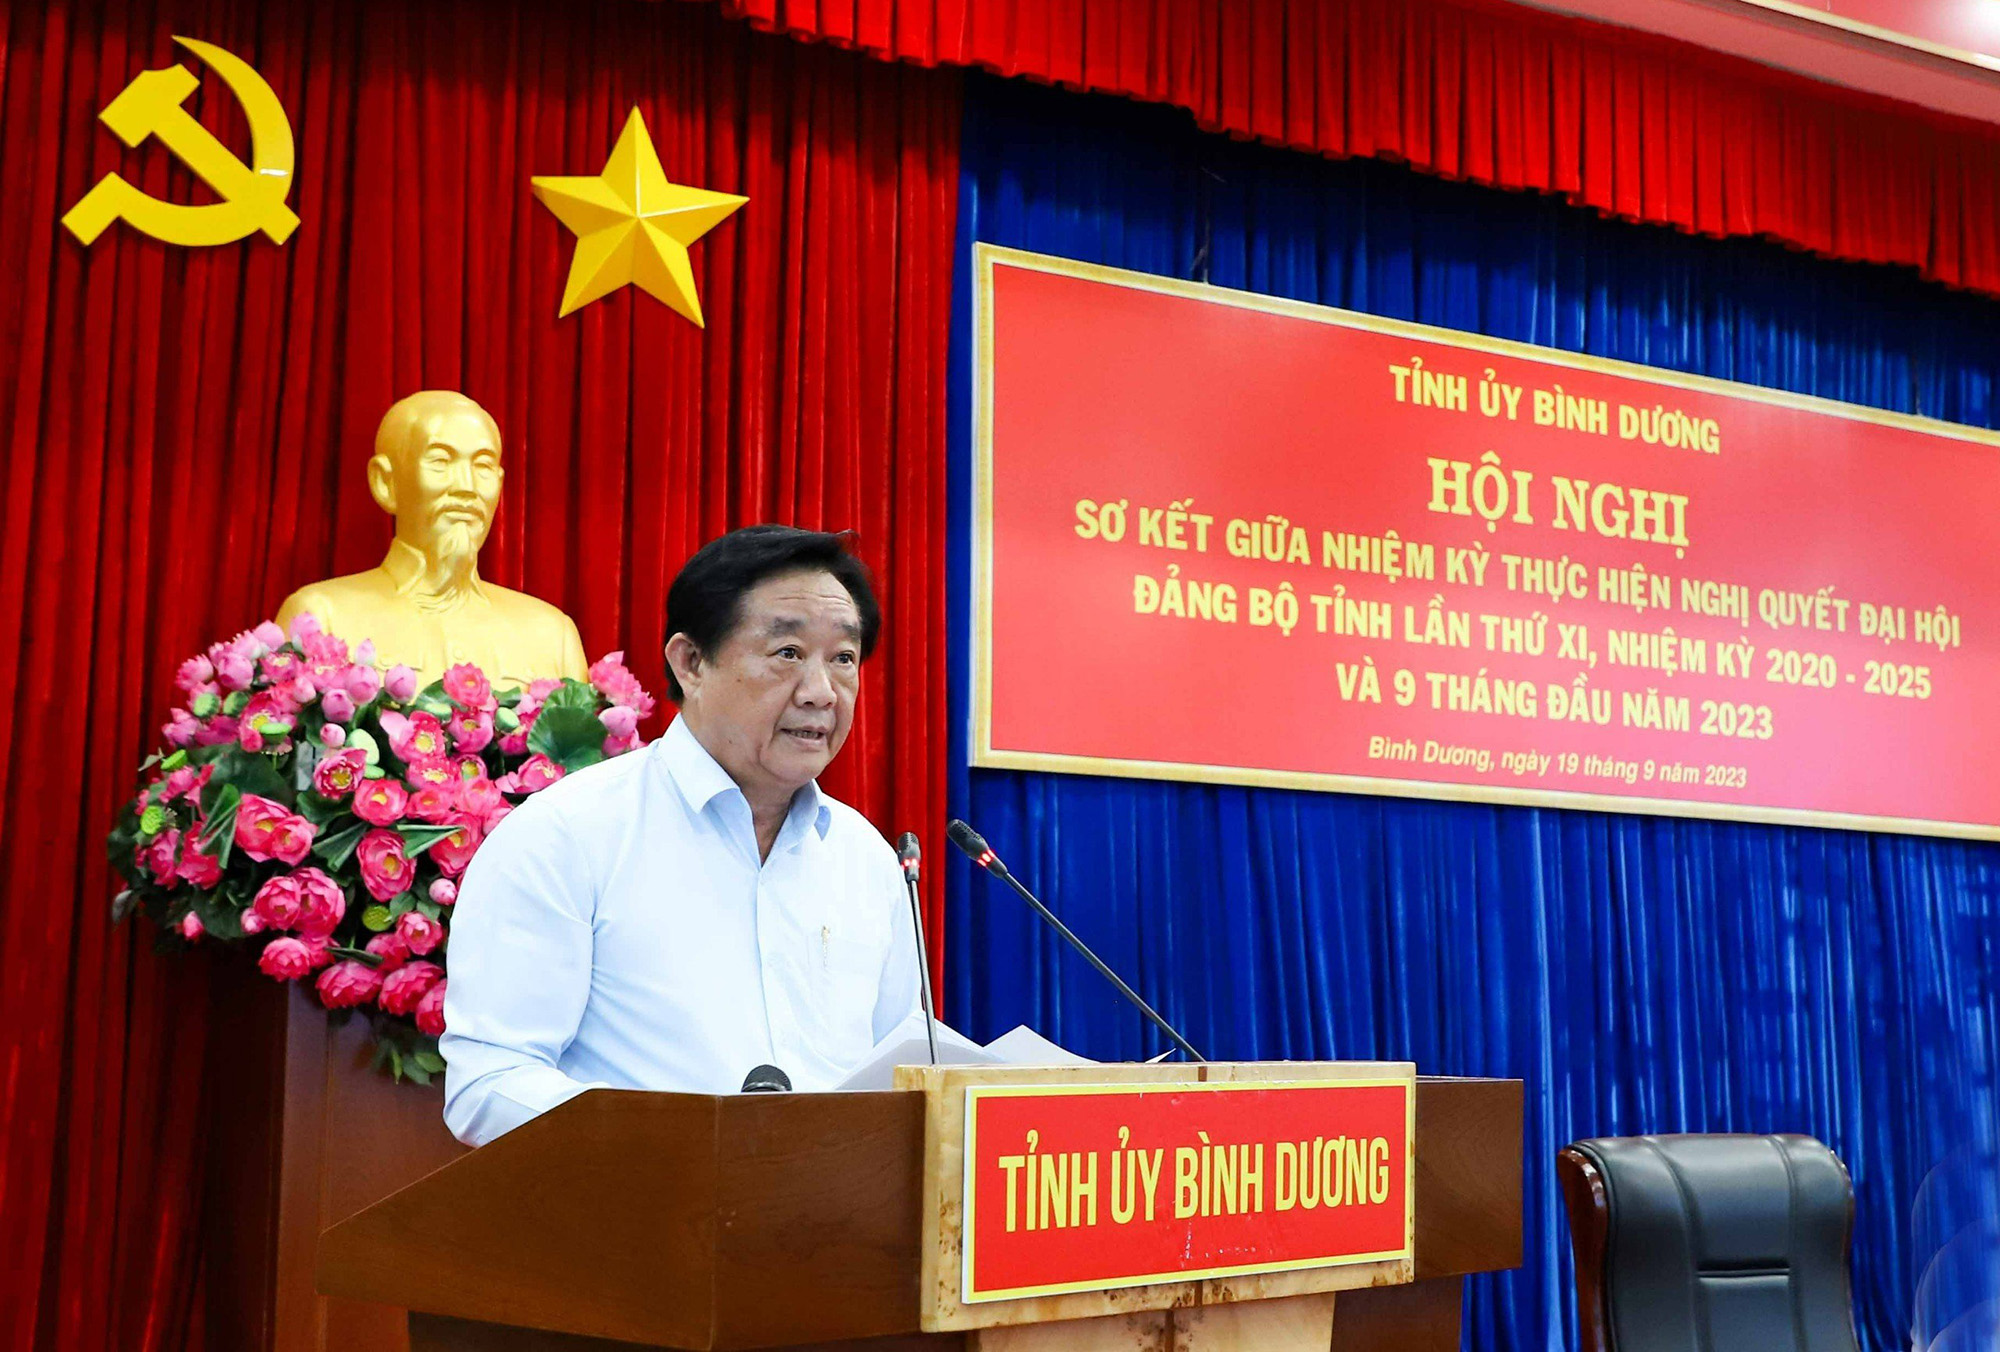 Đồng chí Nguyễn Hoàng Thao, Phó Bí thư Thường trực Tỉnh ủy Bình Dương phát biểu tại Hội nghị.